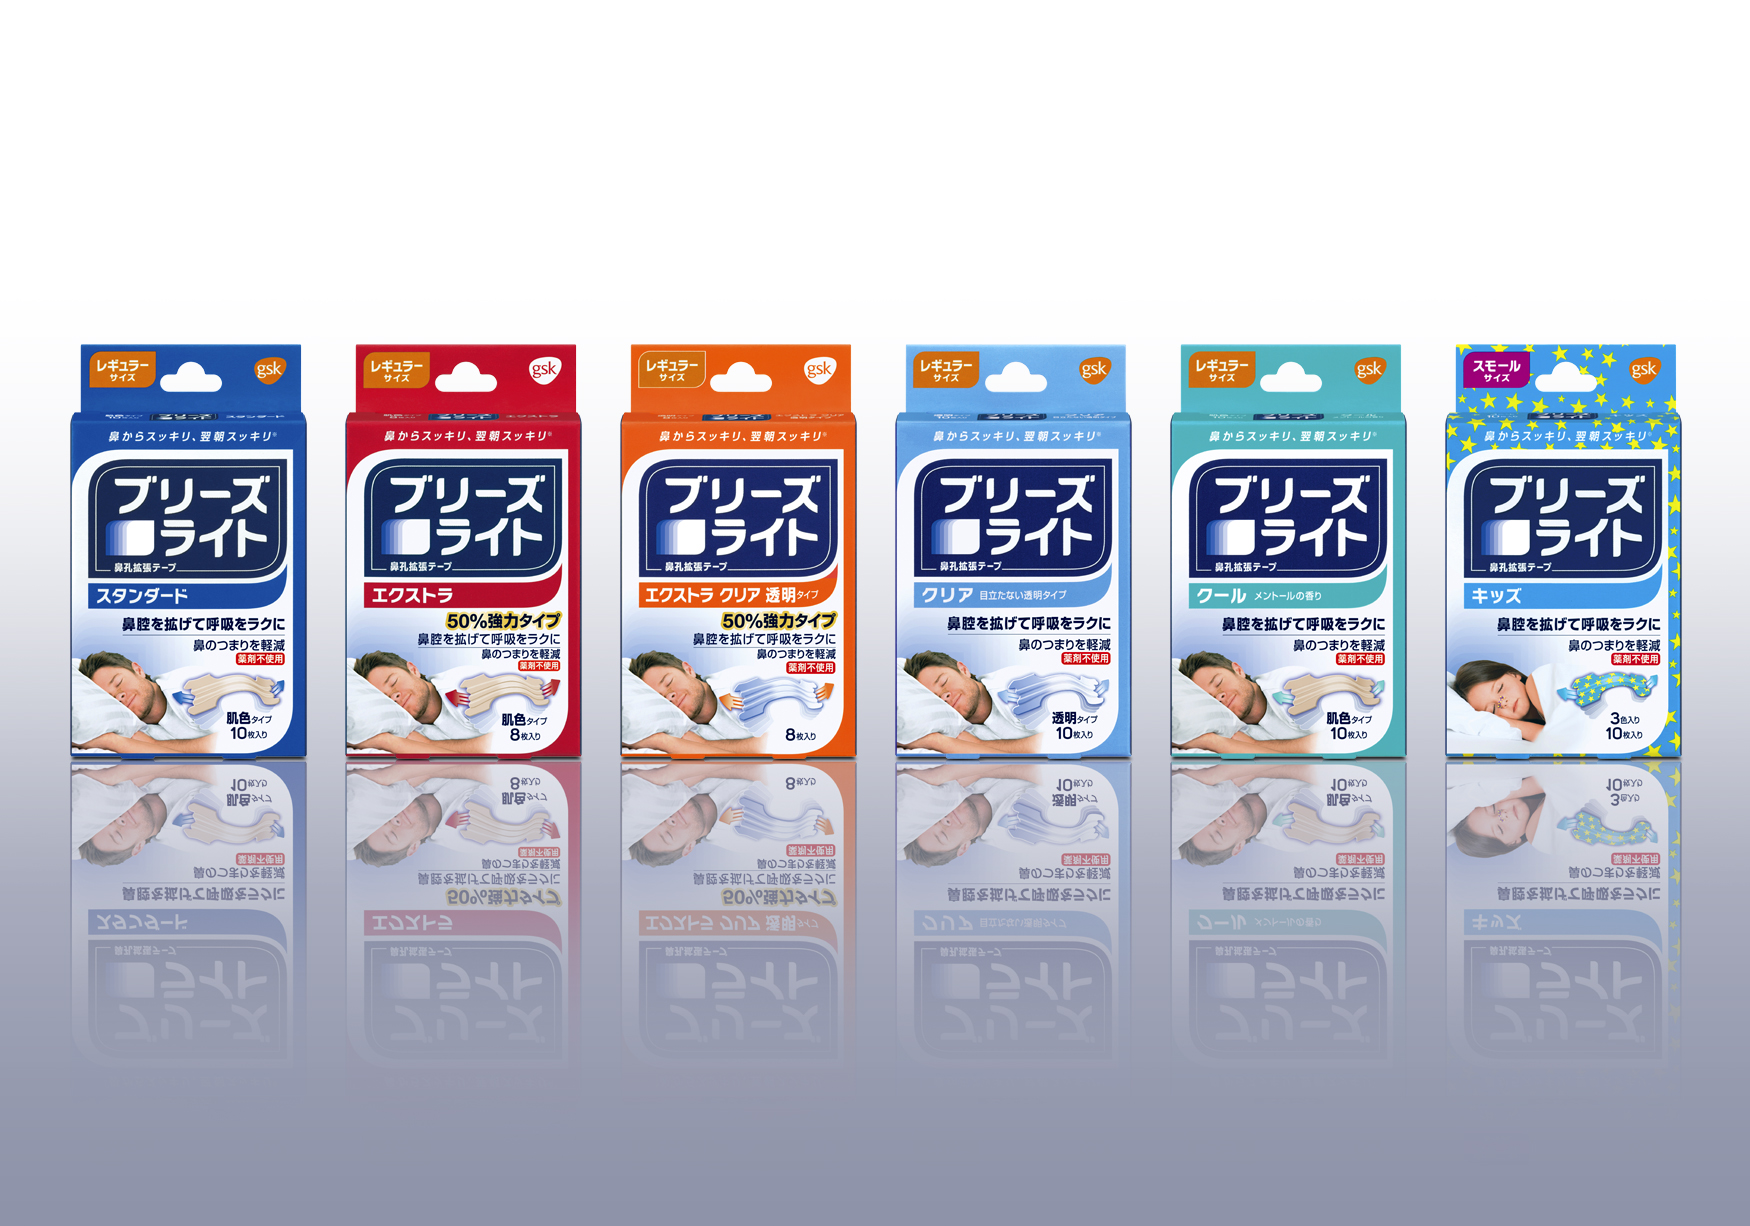 鼻孔拡張テープ『ブリーズライト』が佐藤製薬から販売開始！｜佐藤製薬株式会社のプレスリリース